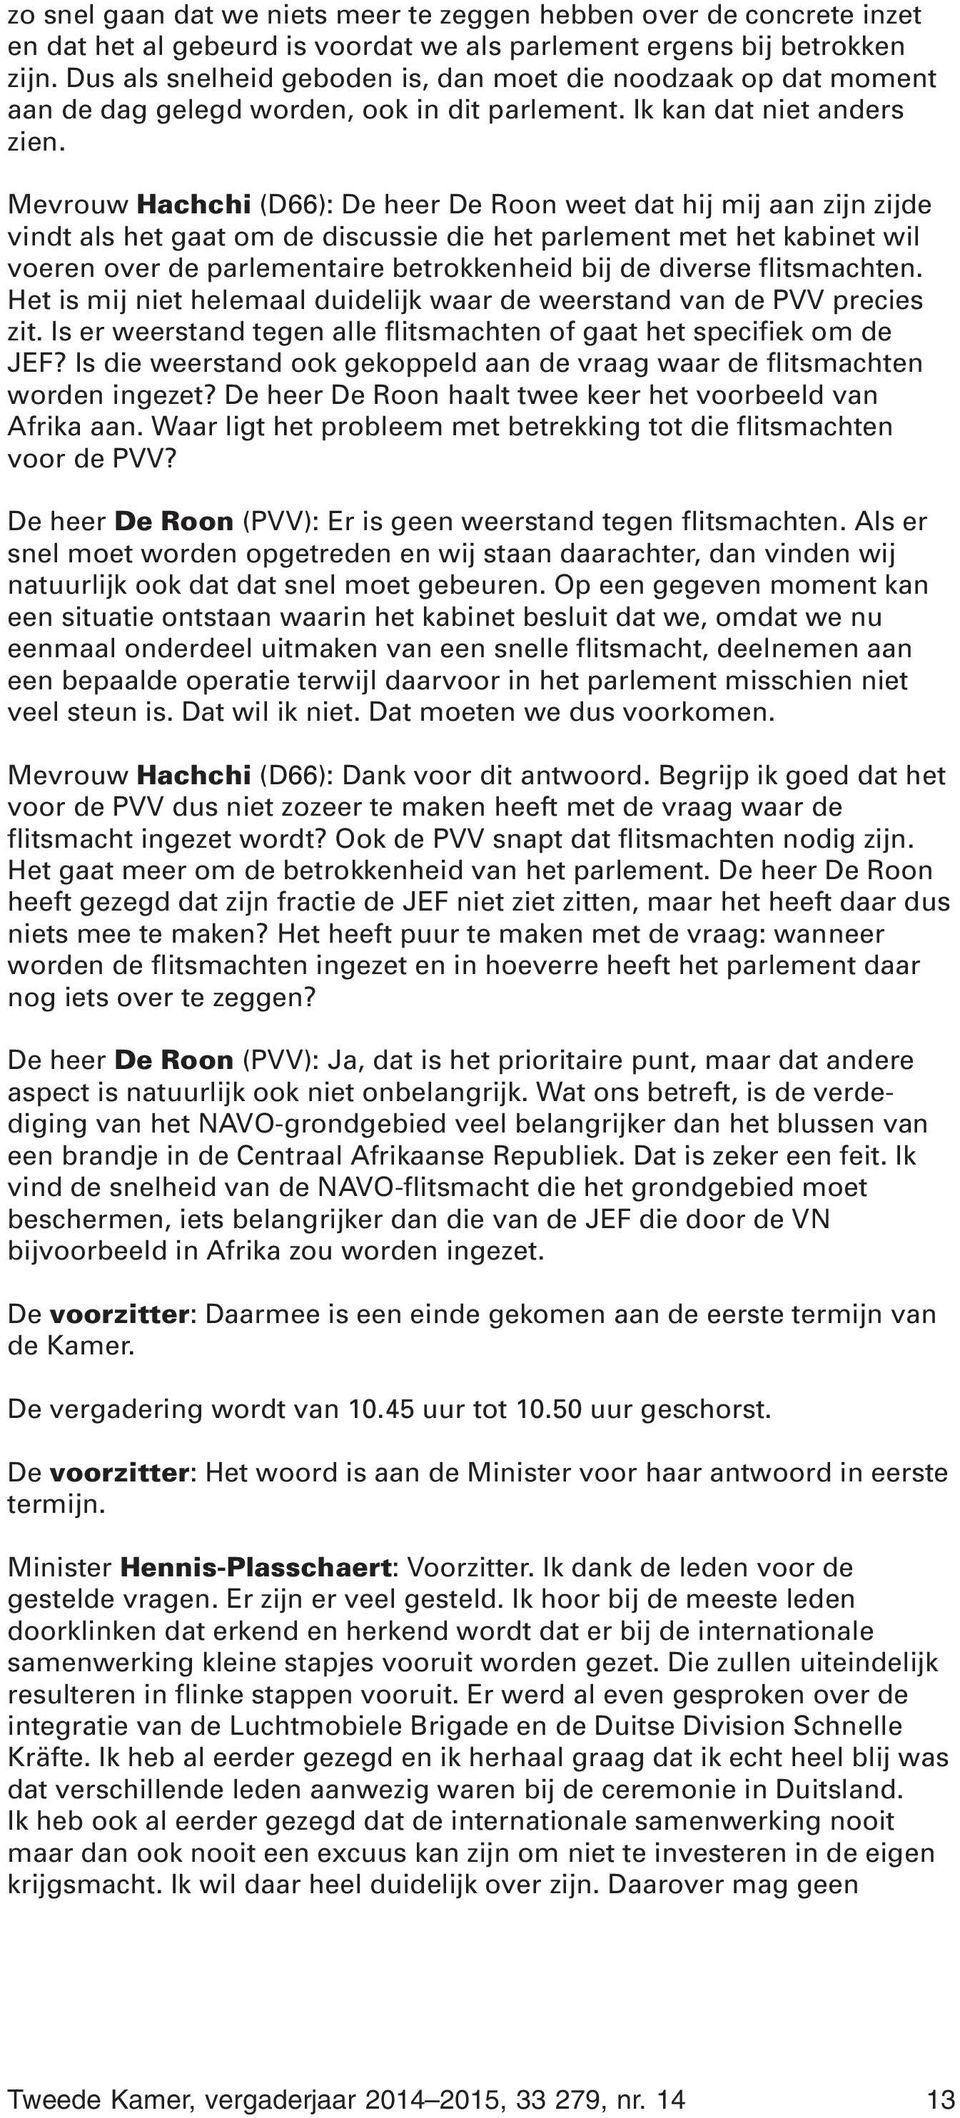 Mevrouw Hachchi (D66): De heer De Roon weet dat hij mij aan zijn zijde vindt als het gaat om de discussie die het parlement met het kabinet wil voeren over de parlementaire betrokkenheid bij de